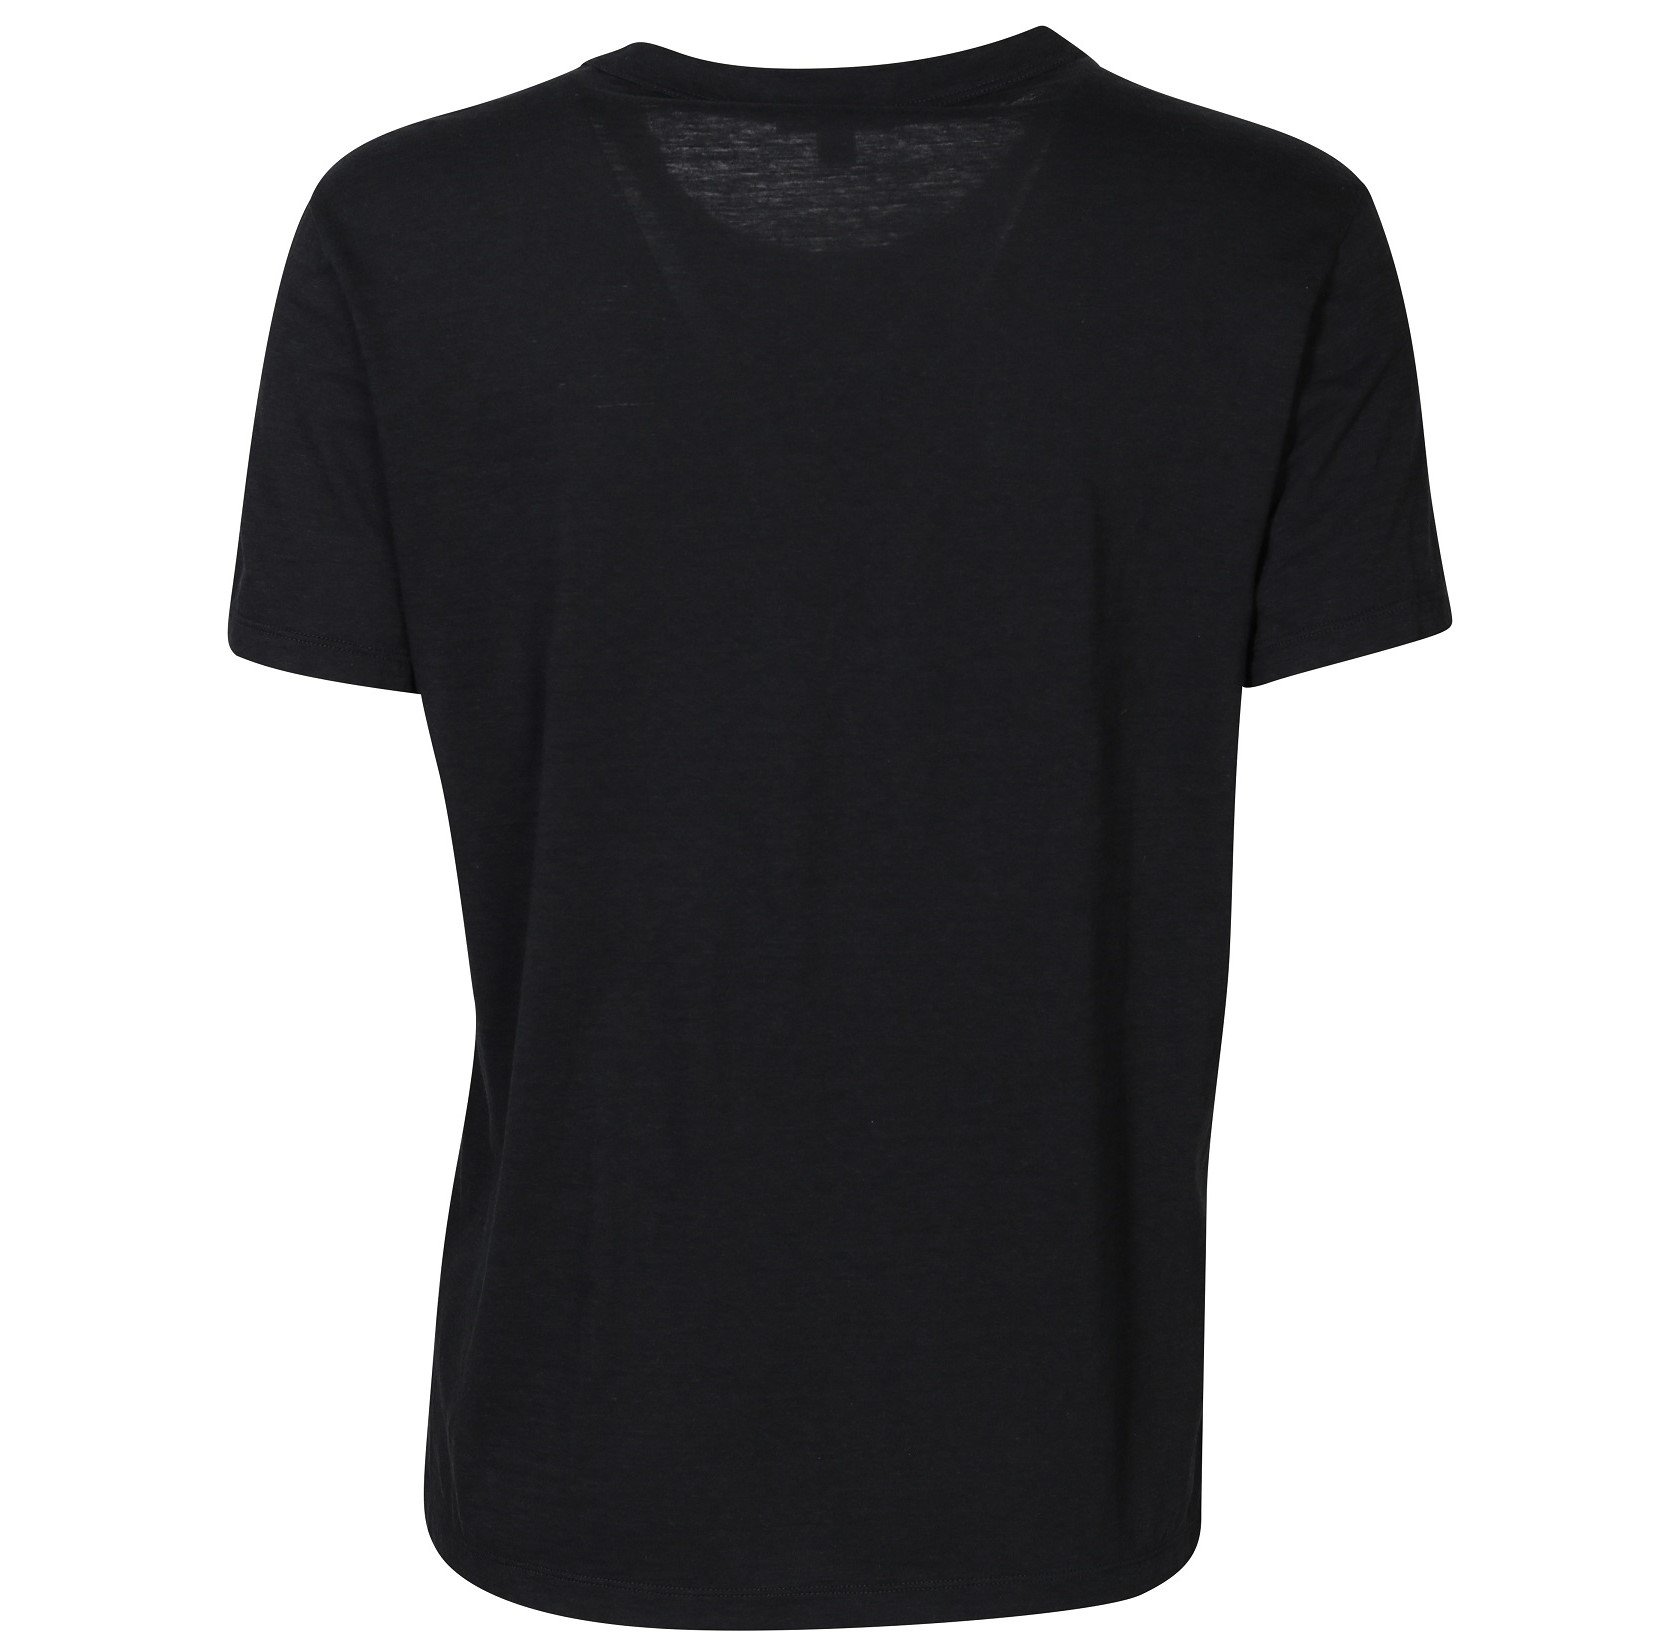 JAMES PERSE Lotus Jersey T-Shirt in Black 0/XS